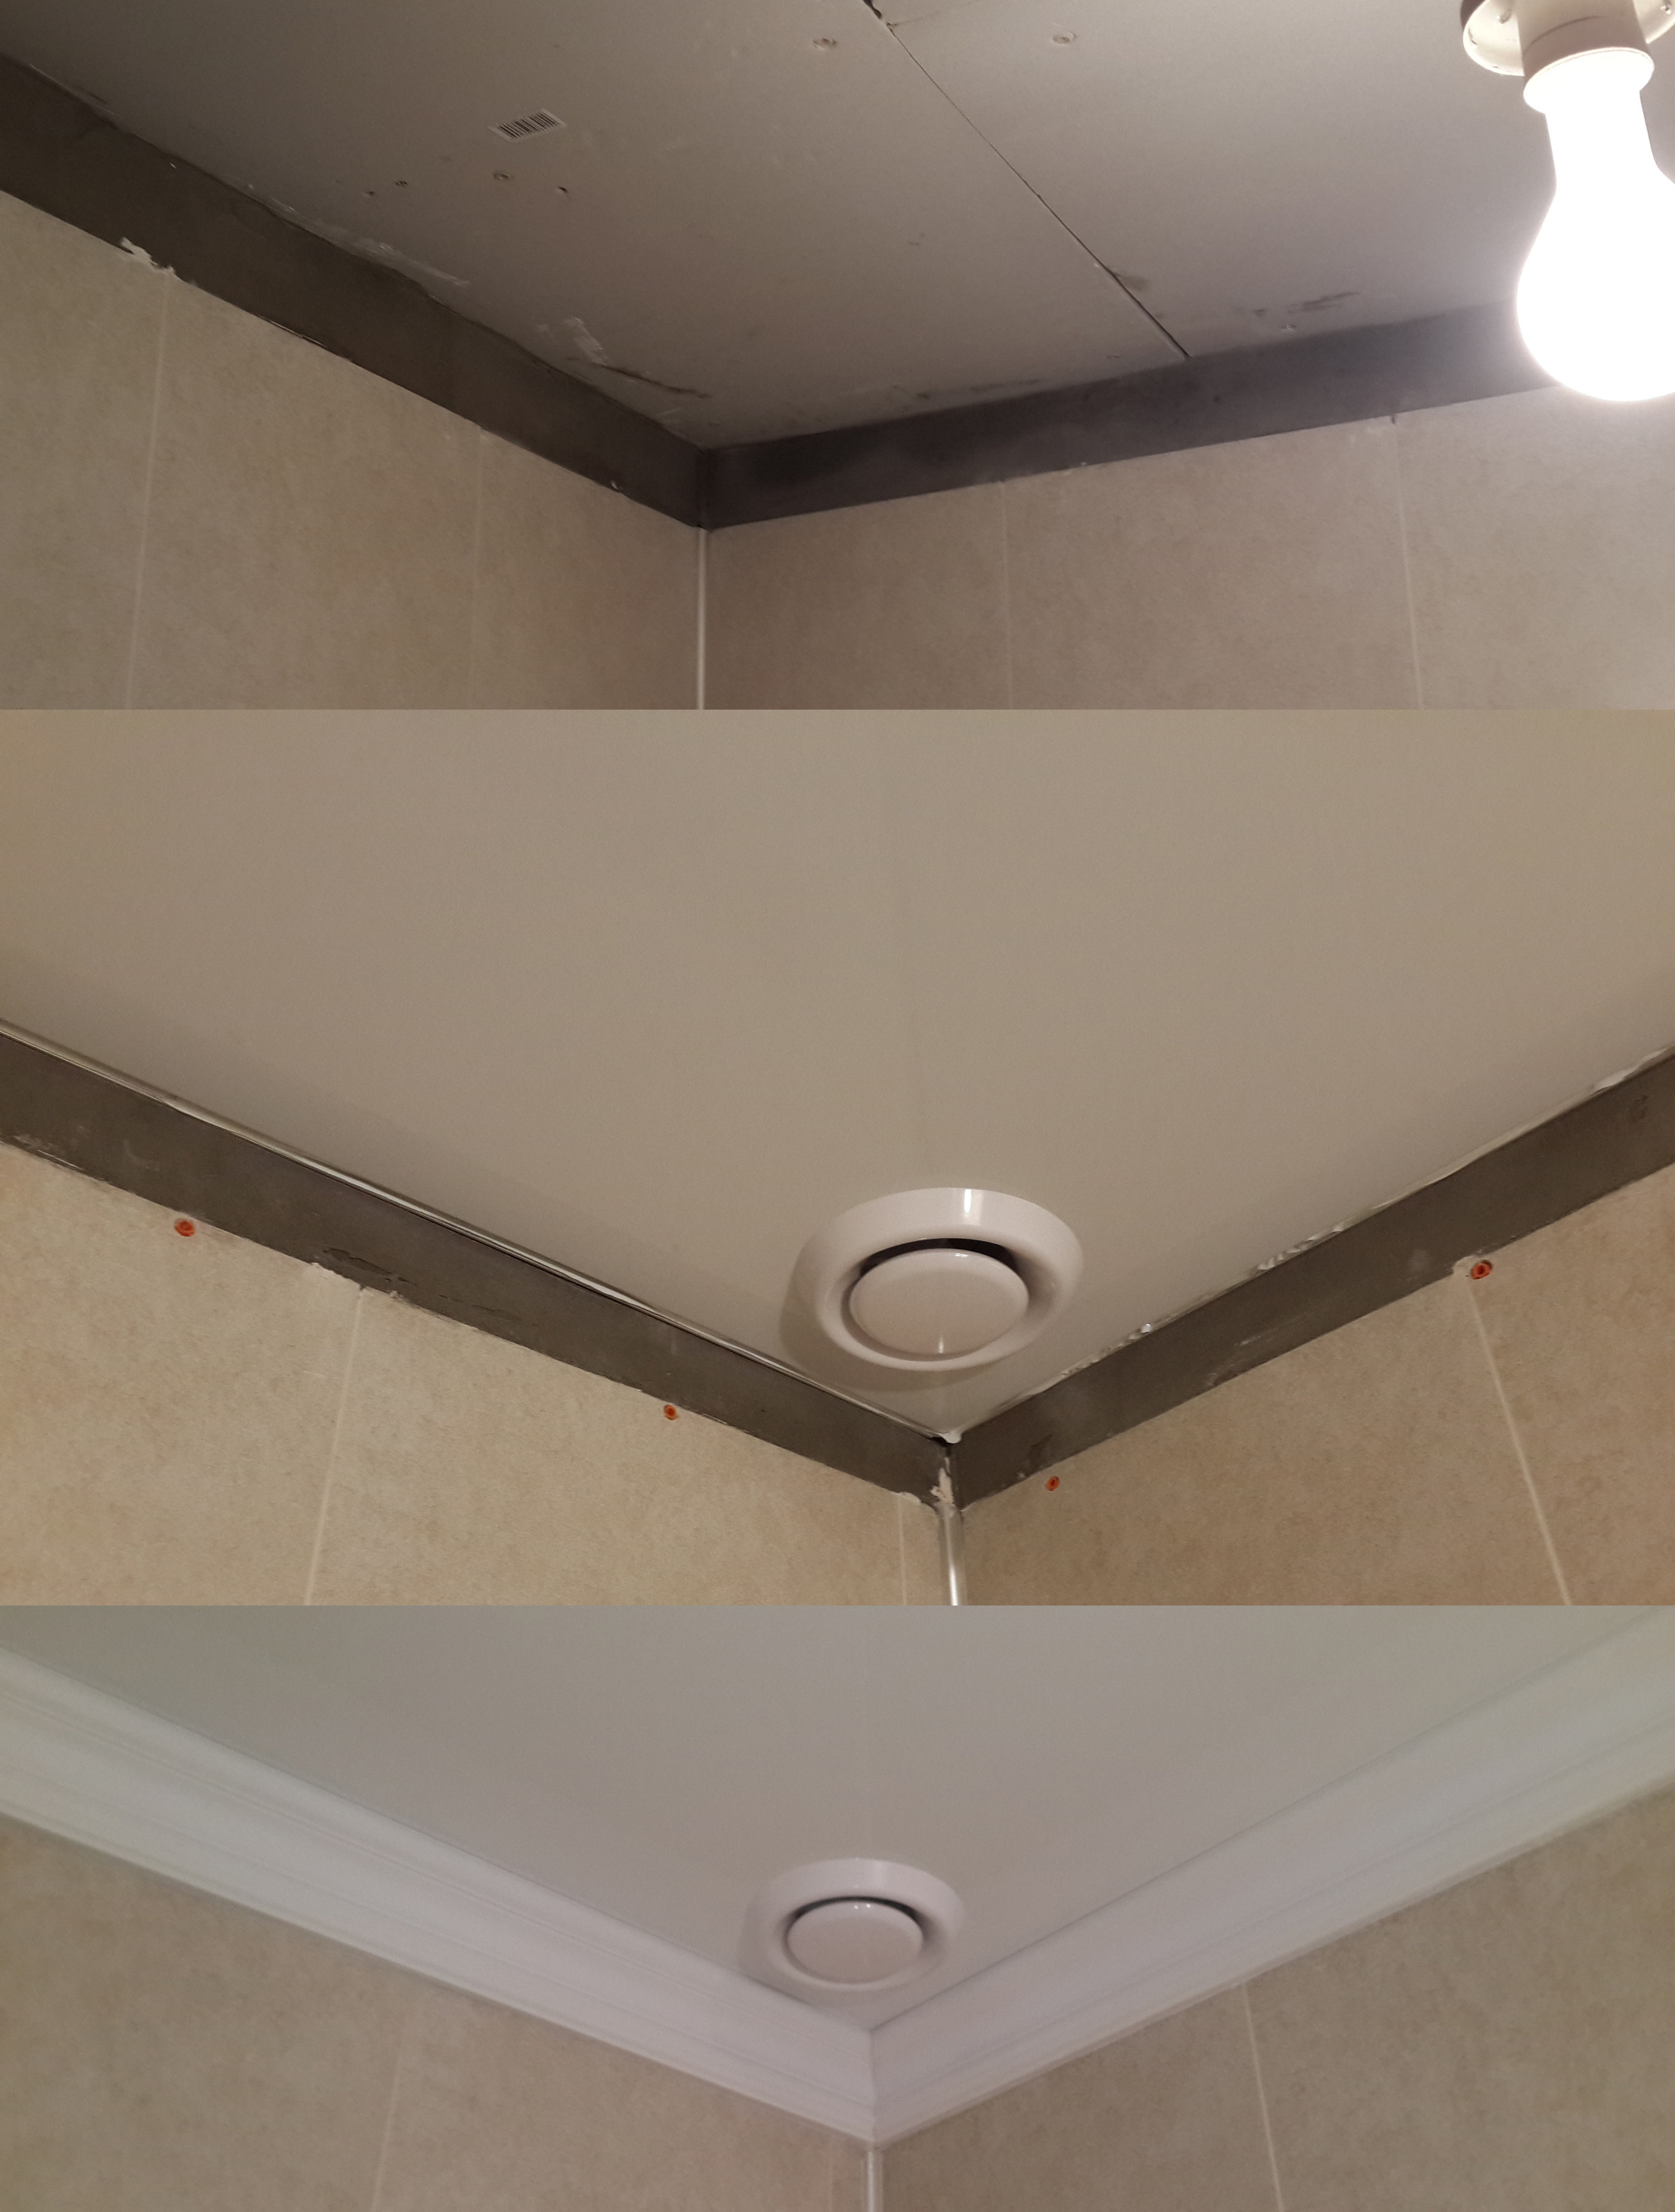 Вентиляция натяжной в ванне. Вентиляционные вытяжки для ванной для pro100. Вытяжной вентилятор 80мм для ванной комнаты под натяжной потолок. Вытяжка в натяжном потолке. Потолочная вытяжка для ванной.